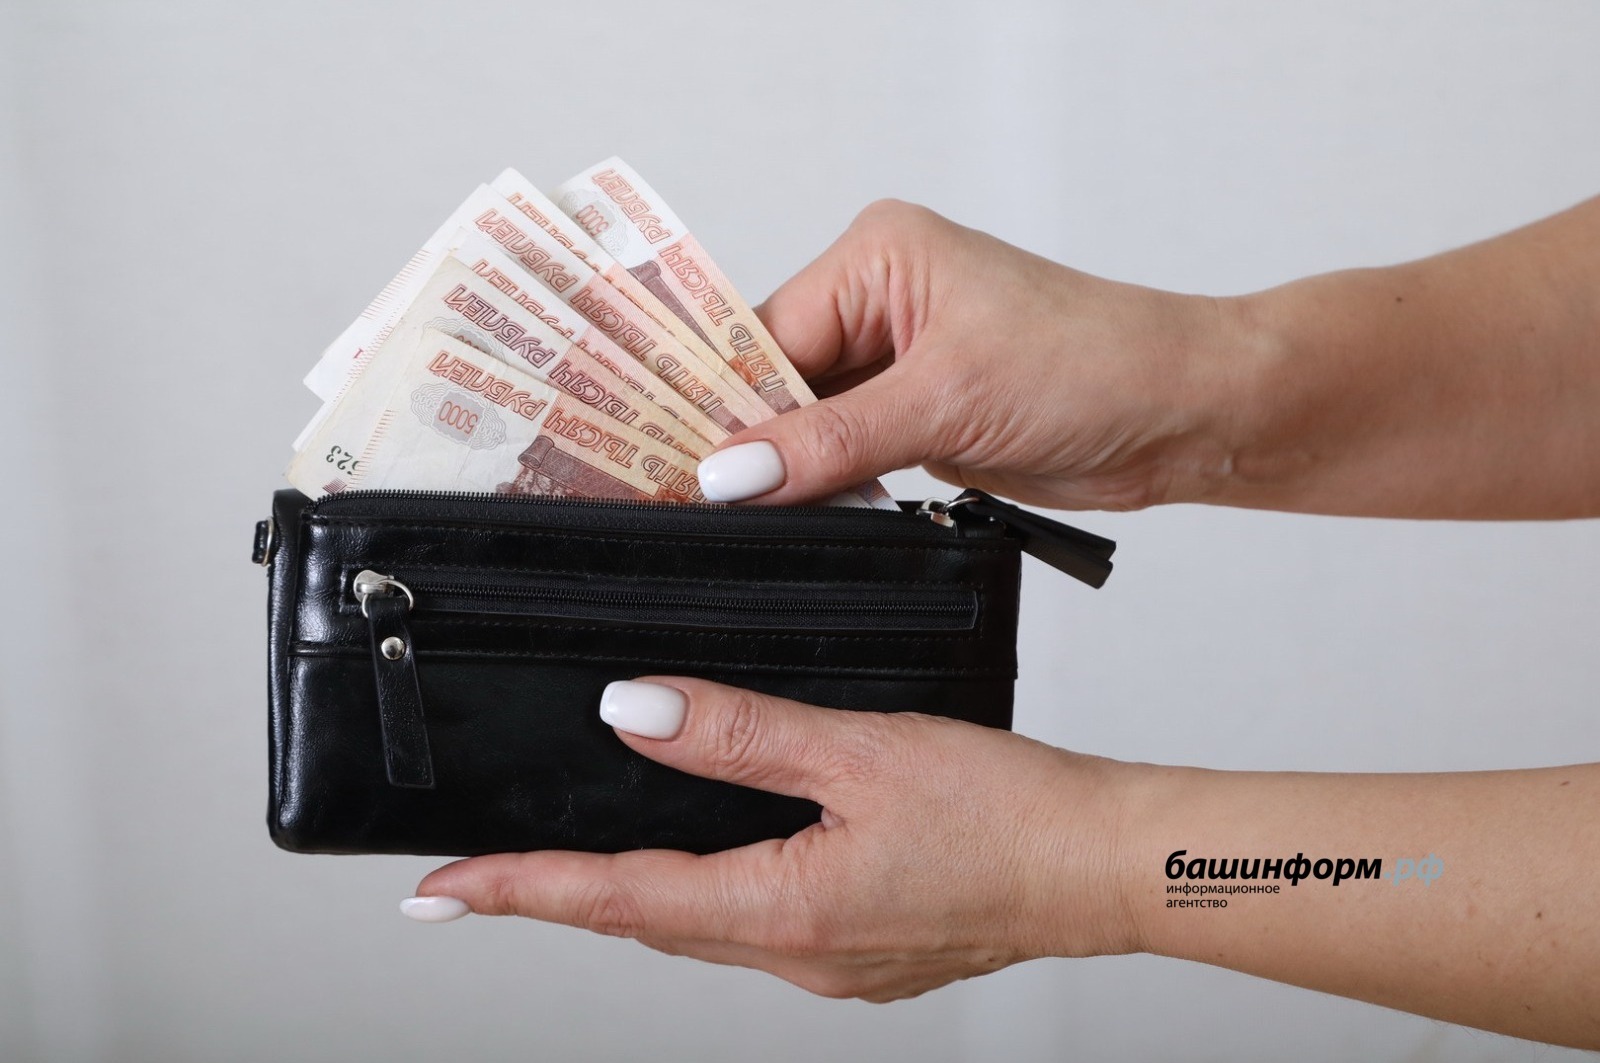 В России появится универсальное пособие для семей с низкими доходами